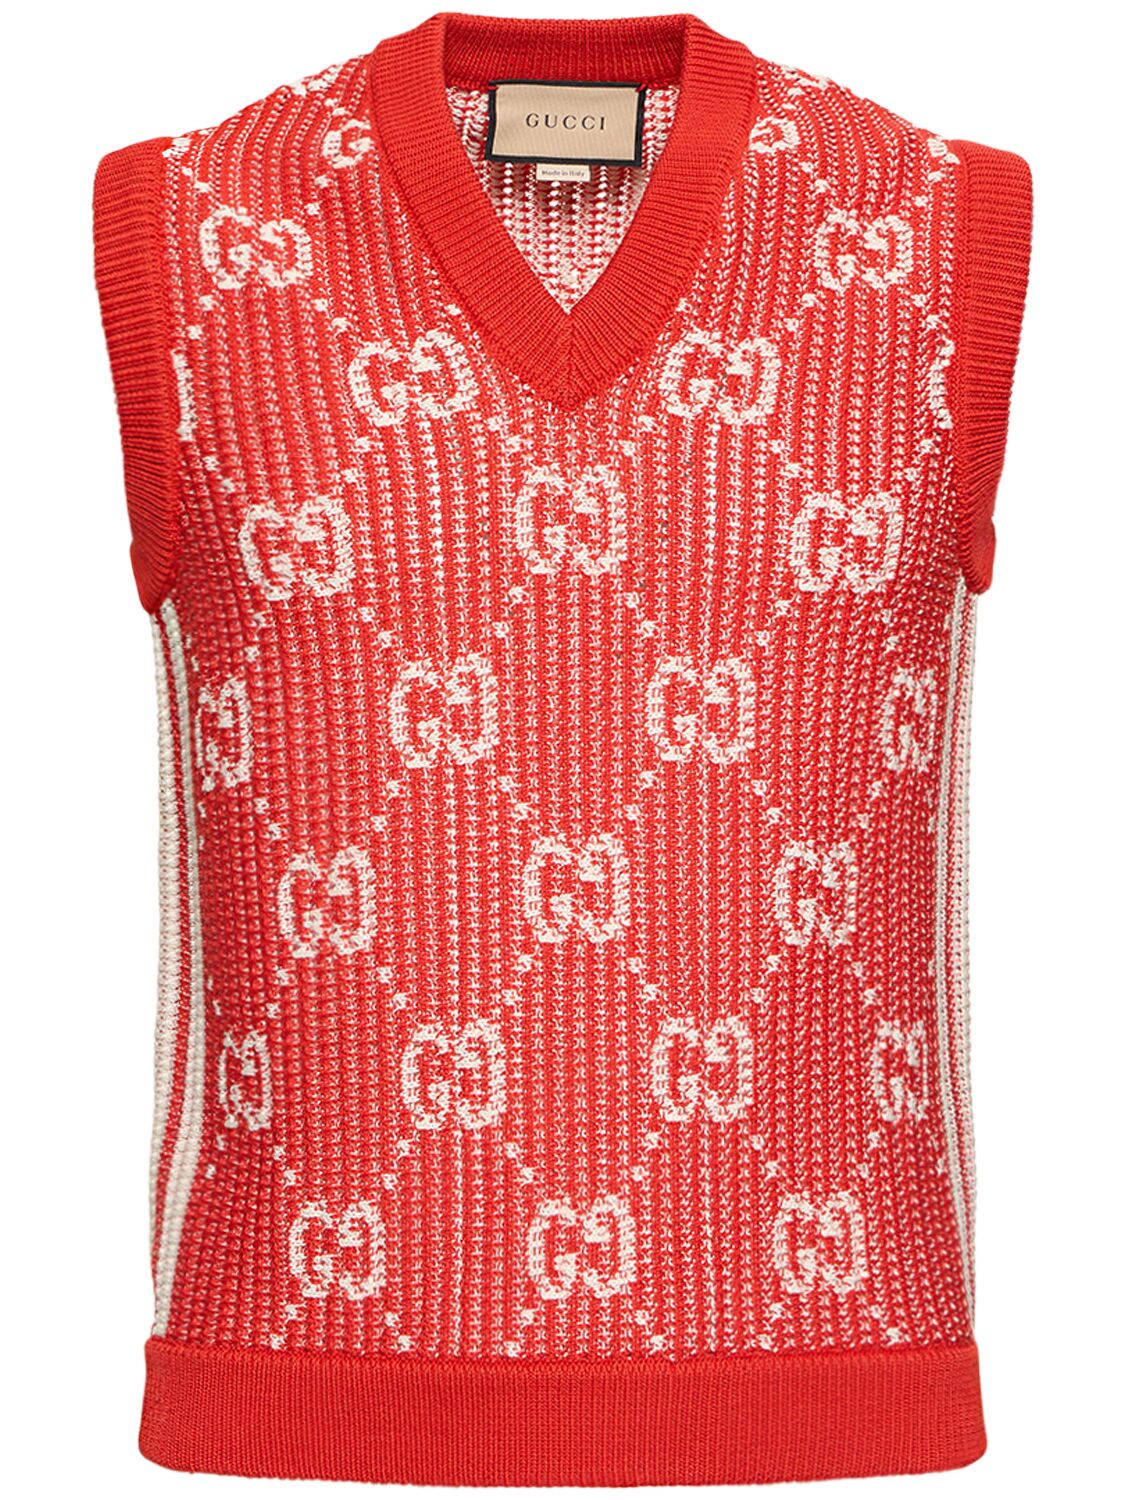 Gg Logo Cotton Knit Vest